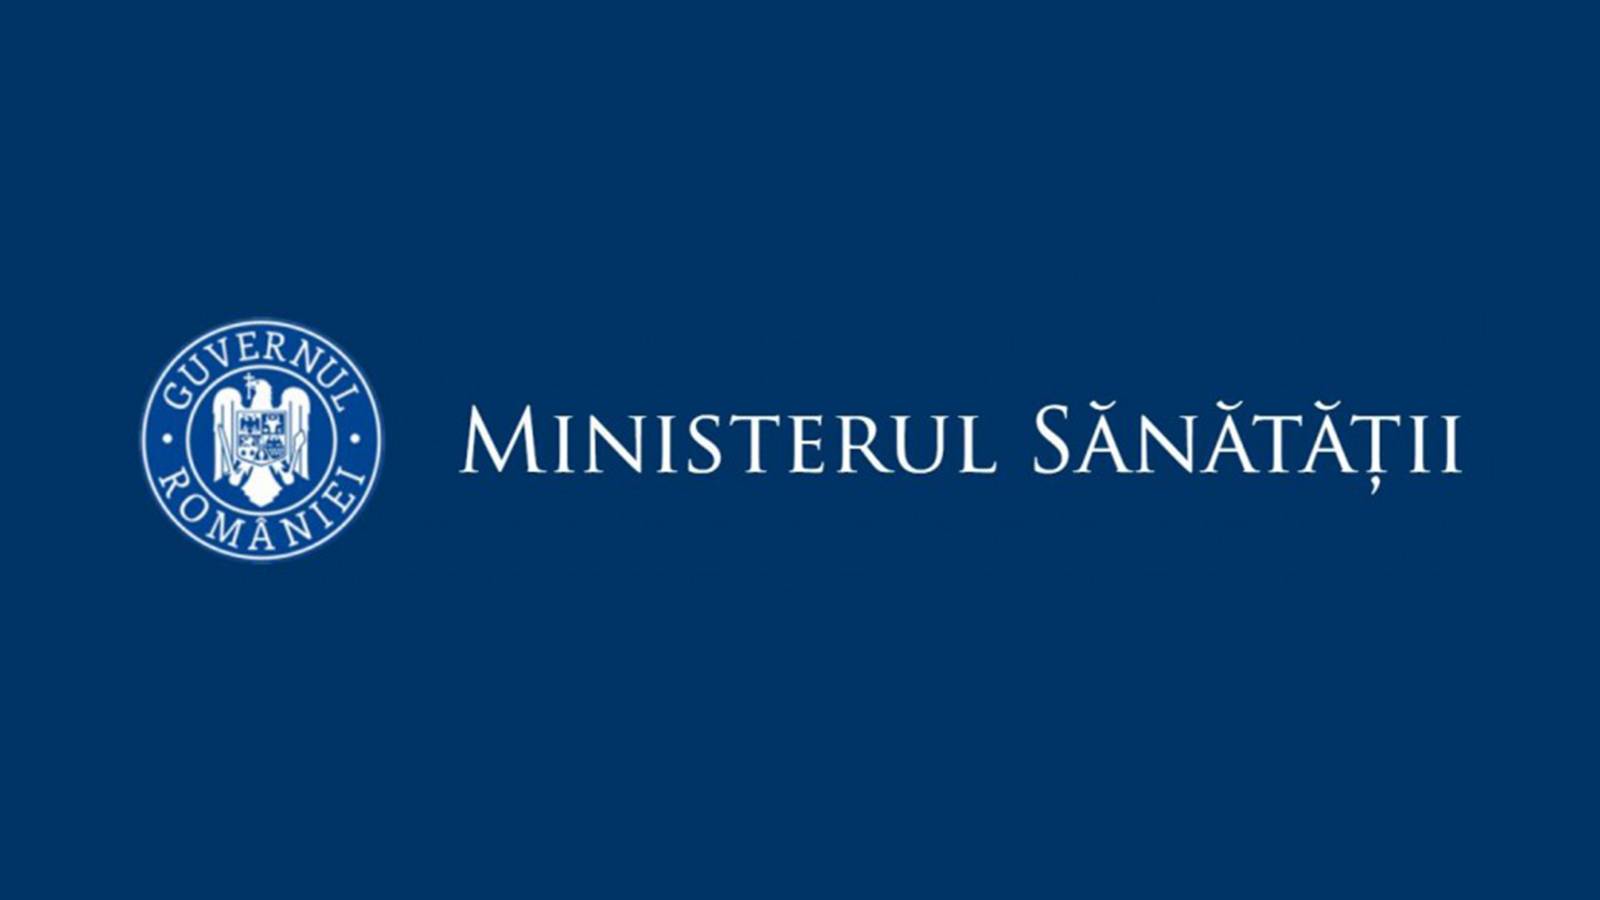 Ministerul Sanatatii reinceperea scolii Romania